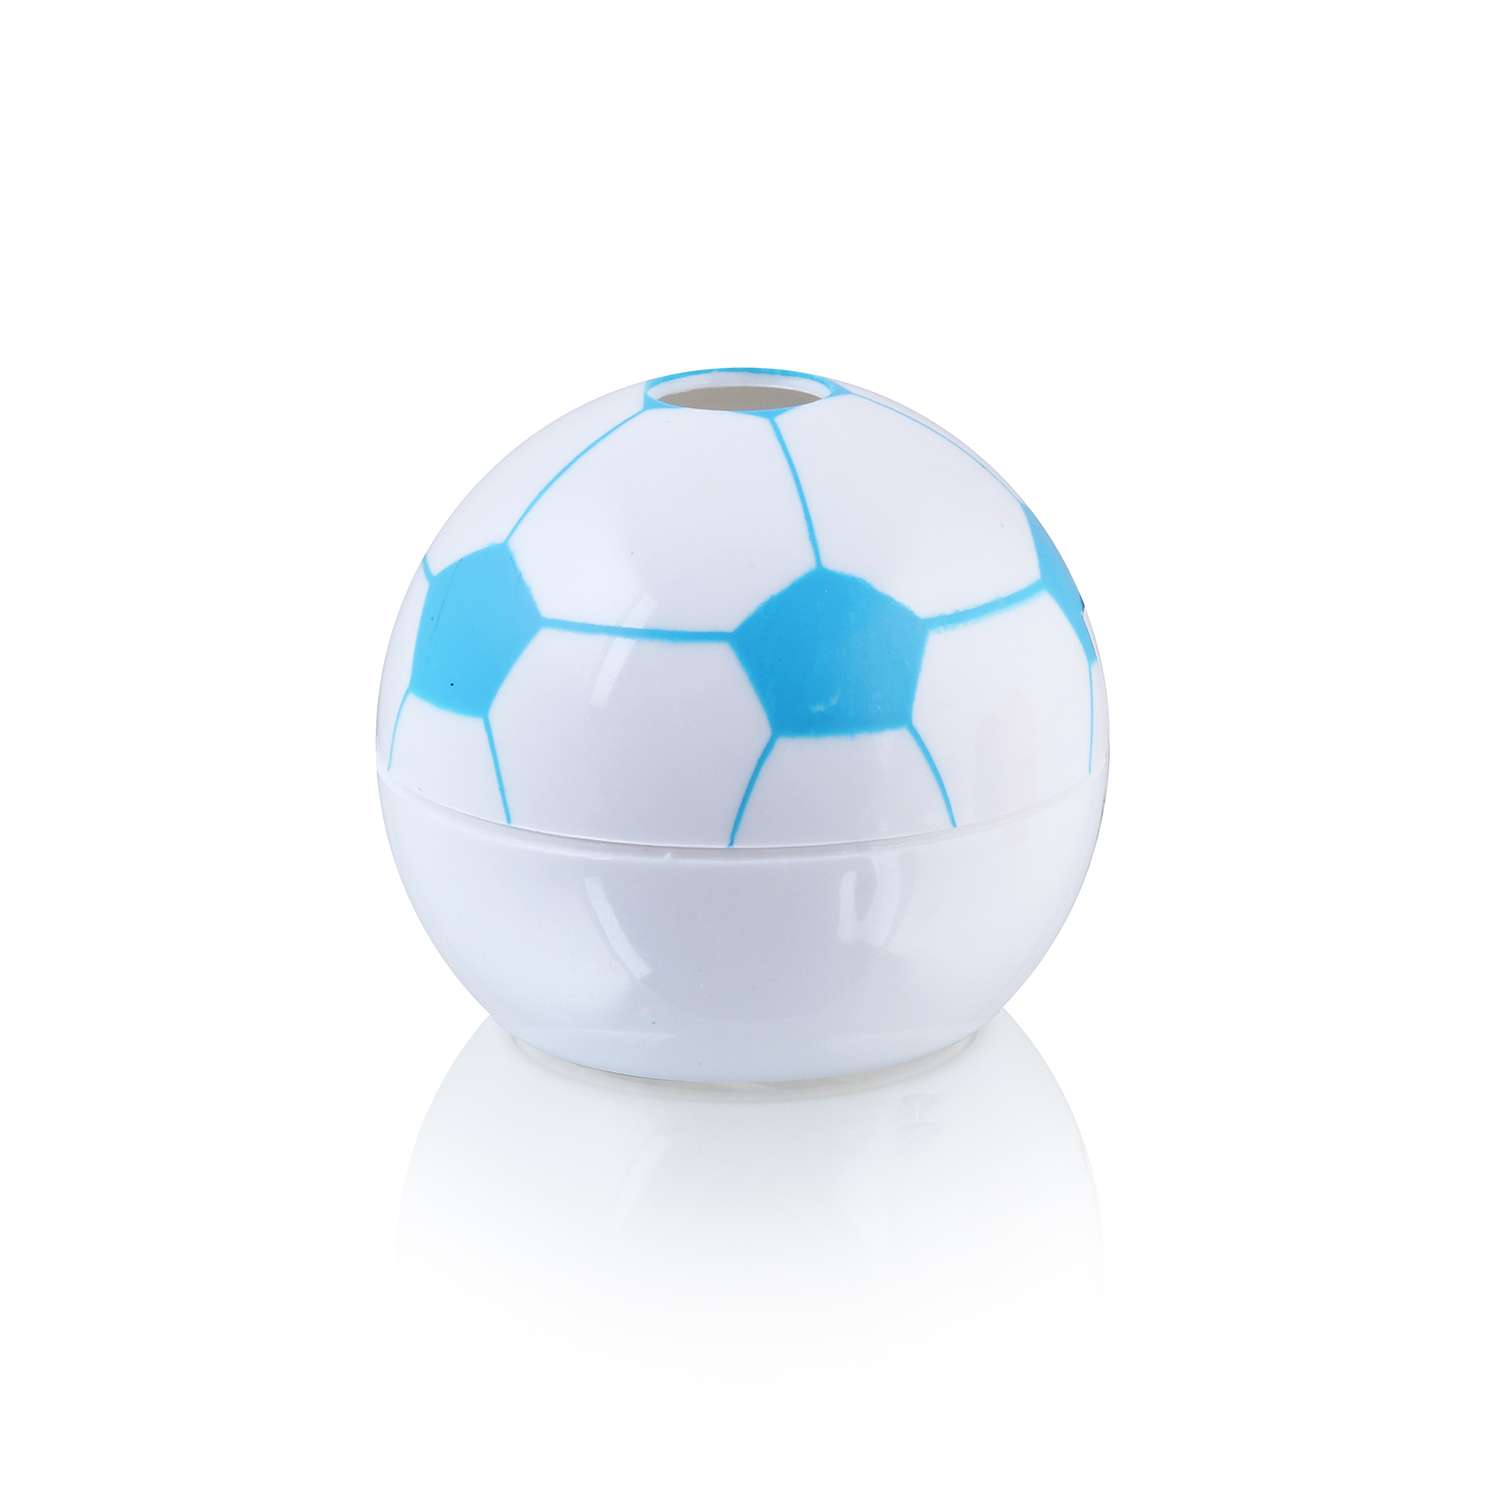 Призма Bebelot Мяч 5 см в ассортименте - фото 2